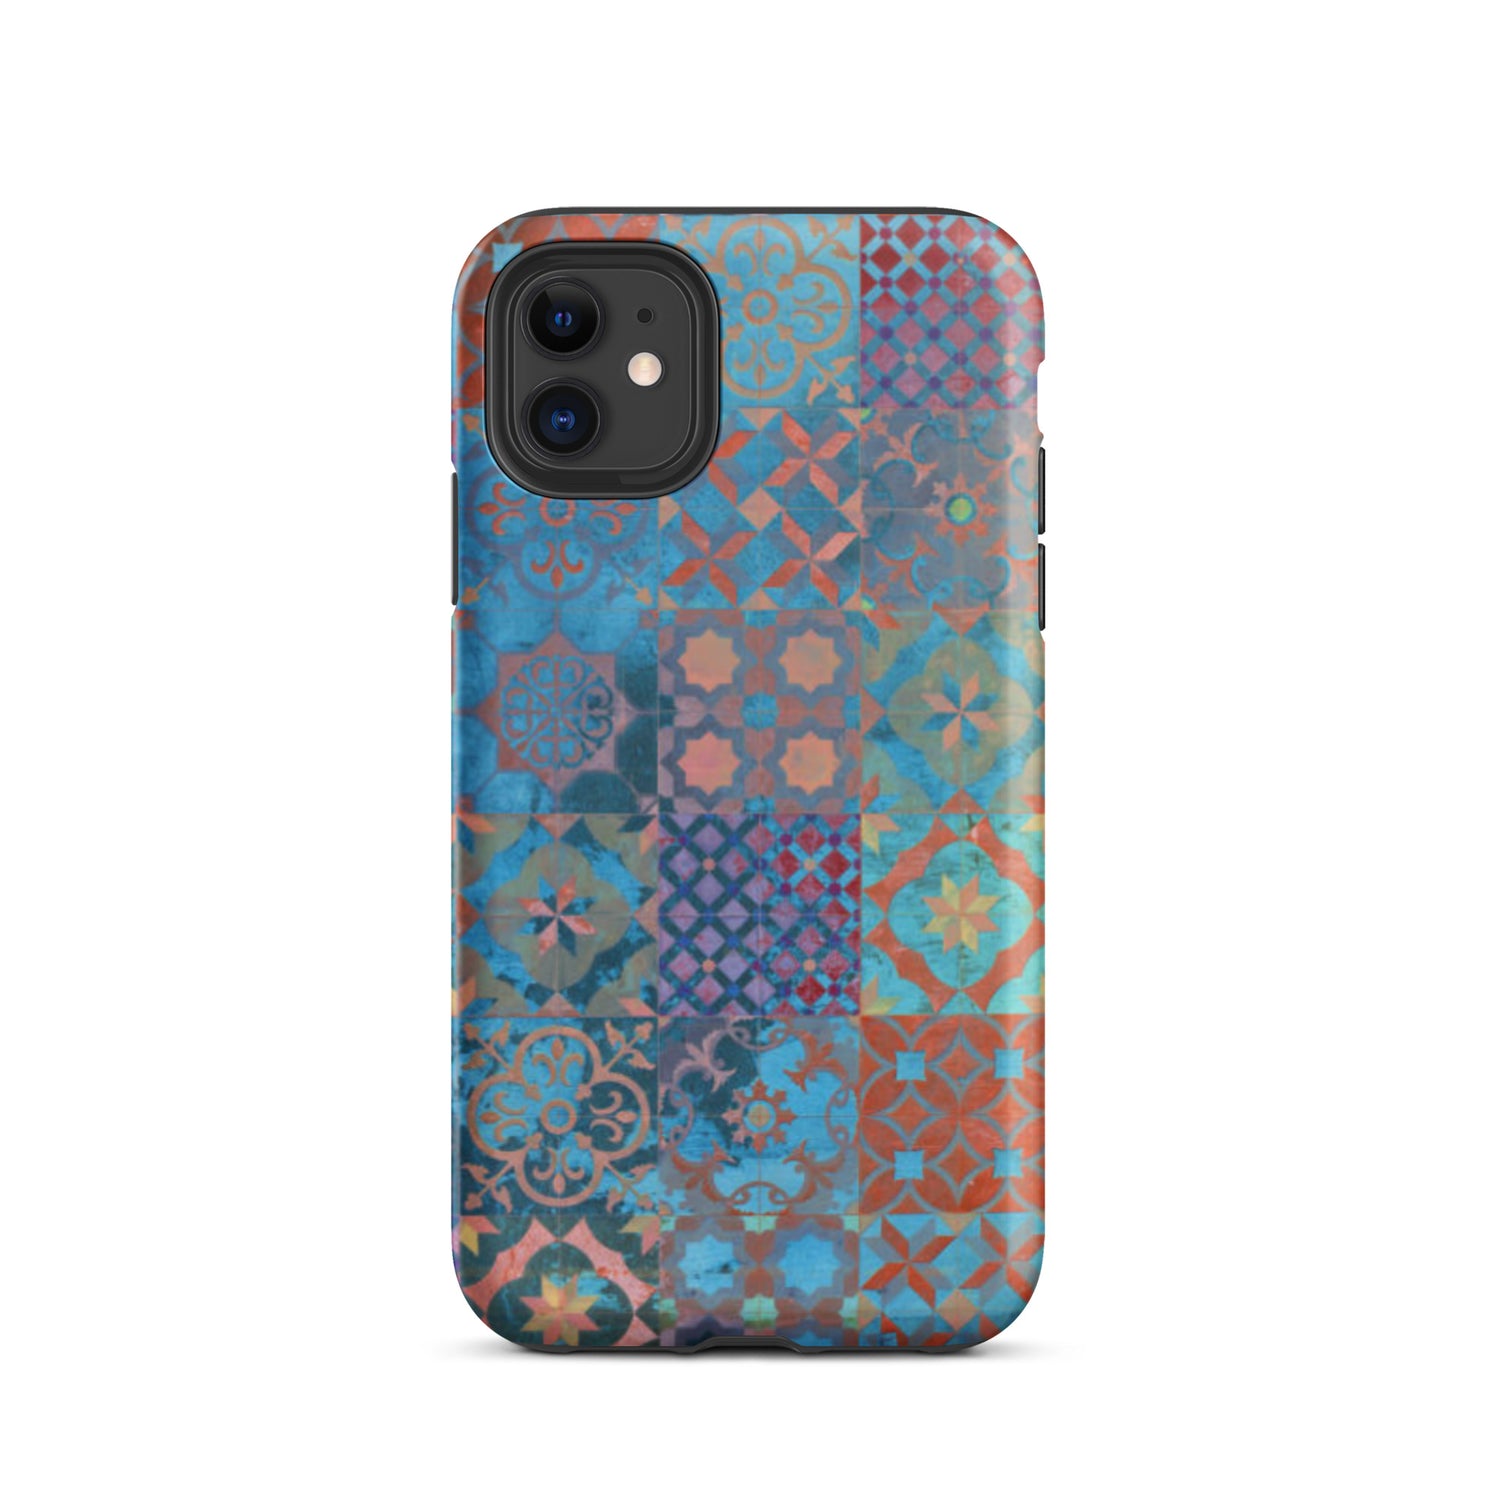 Moroccan Tile Tough iPhone 11 case